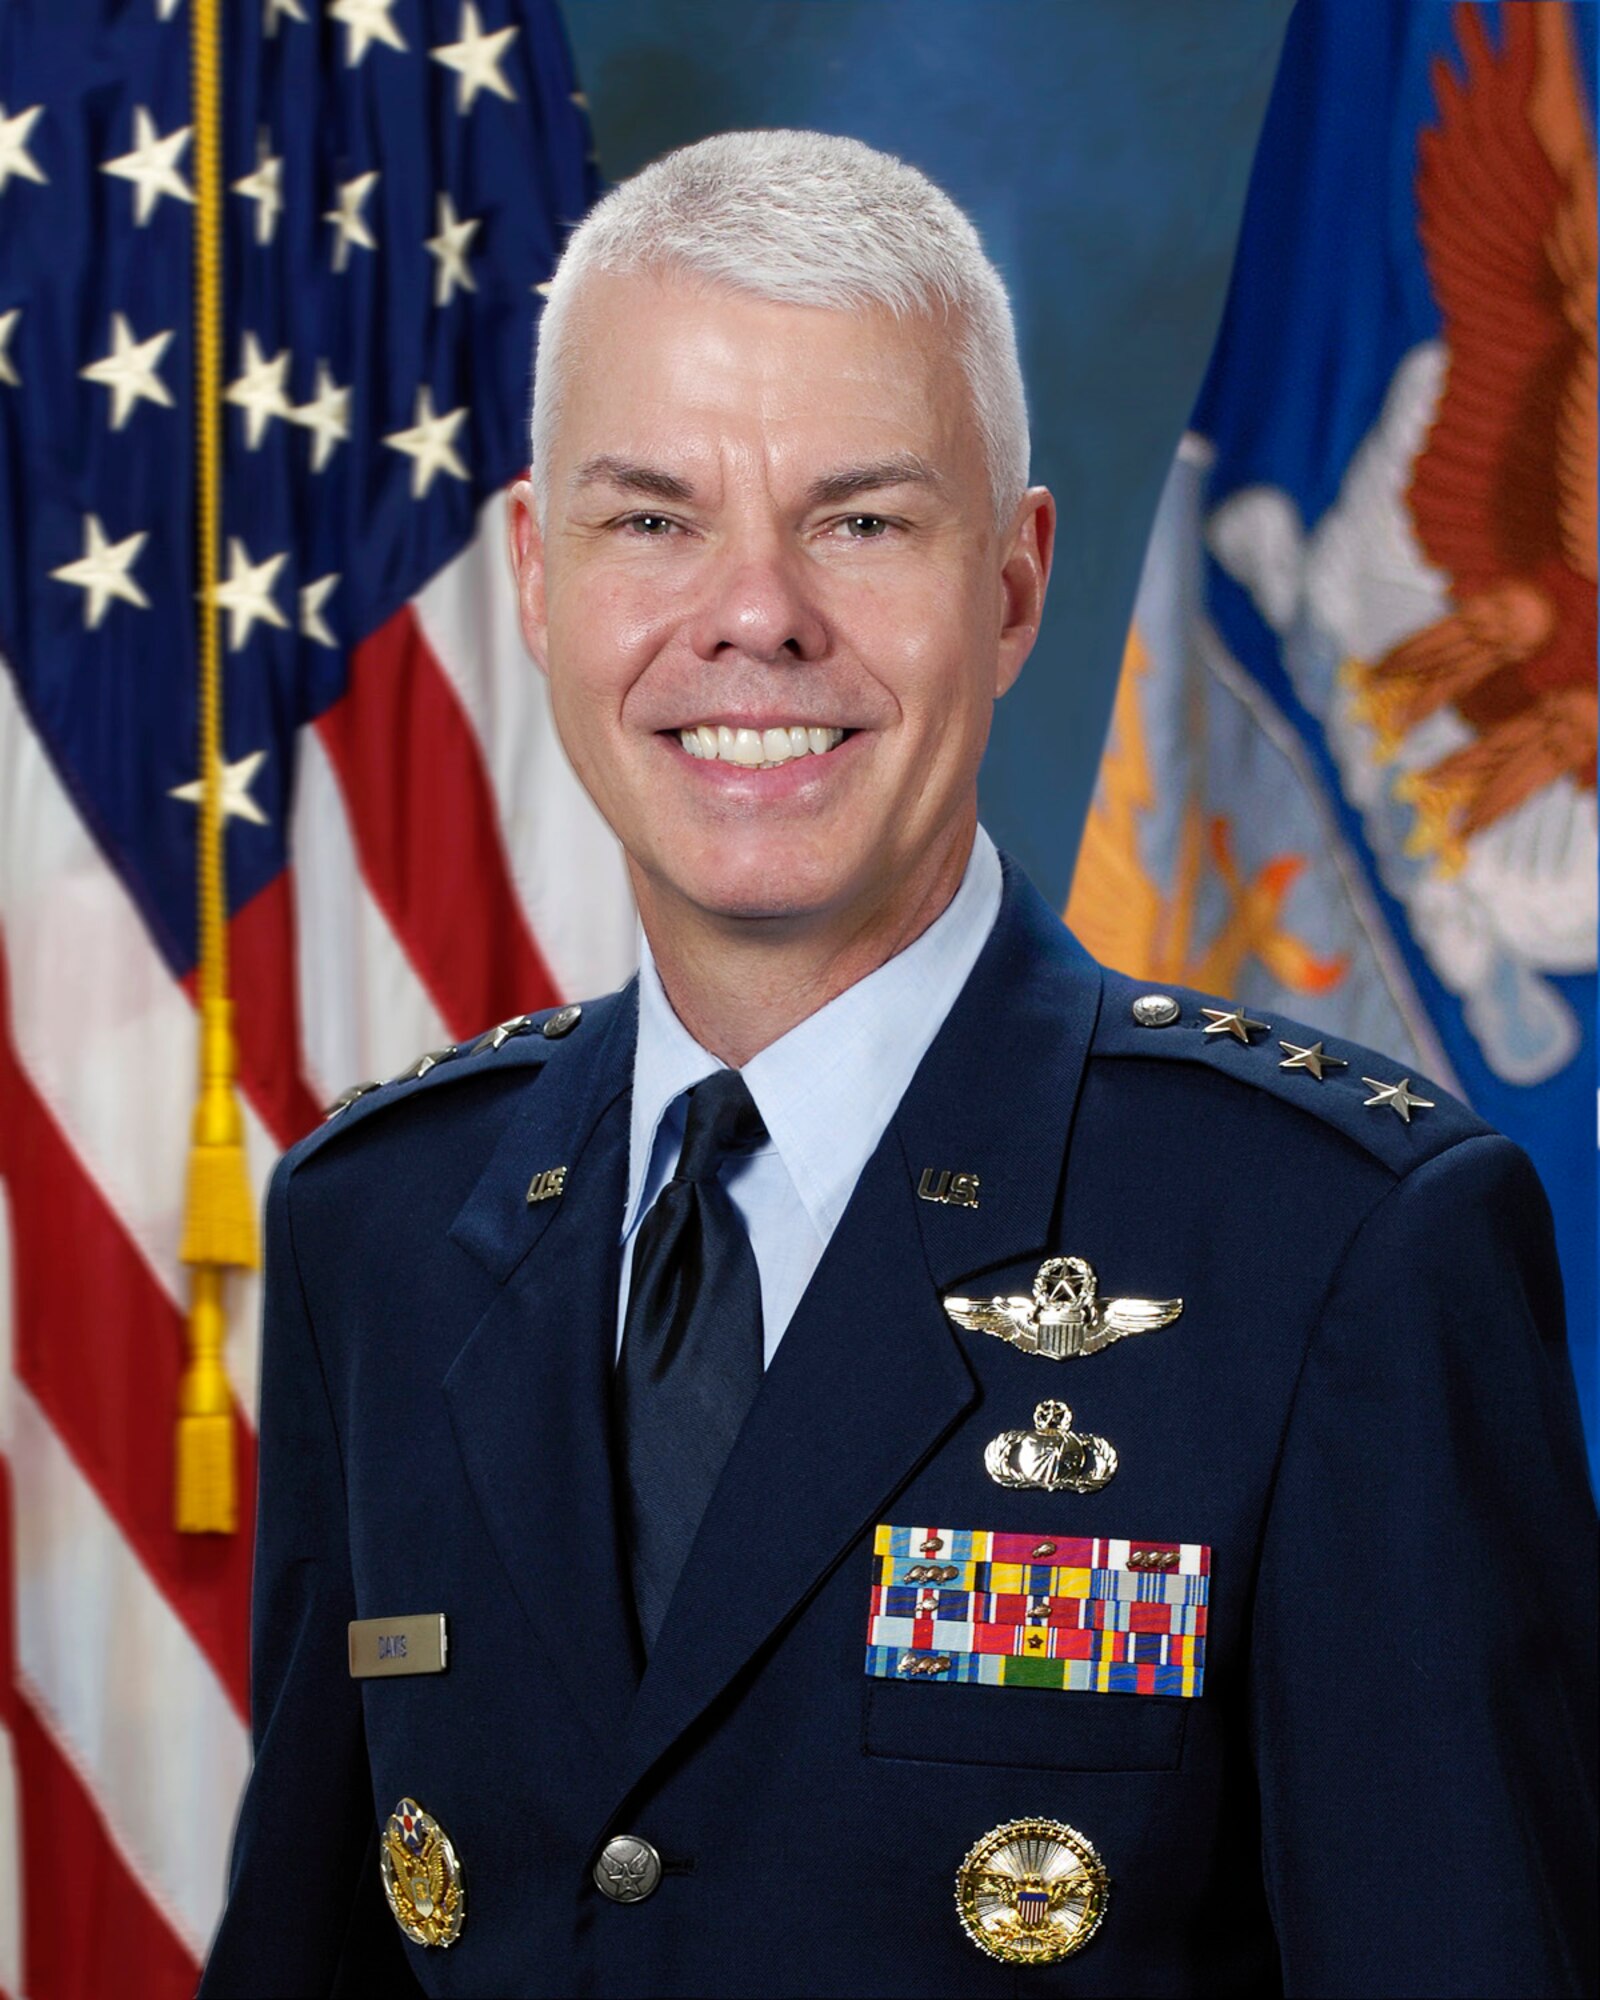 Lt. Gen. Charles R. Davis